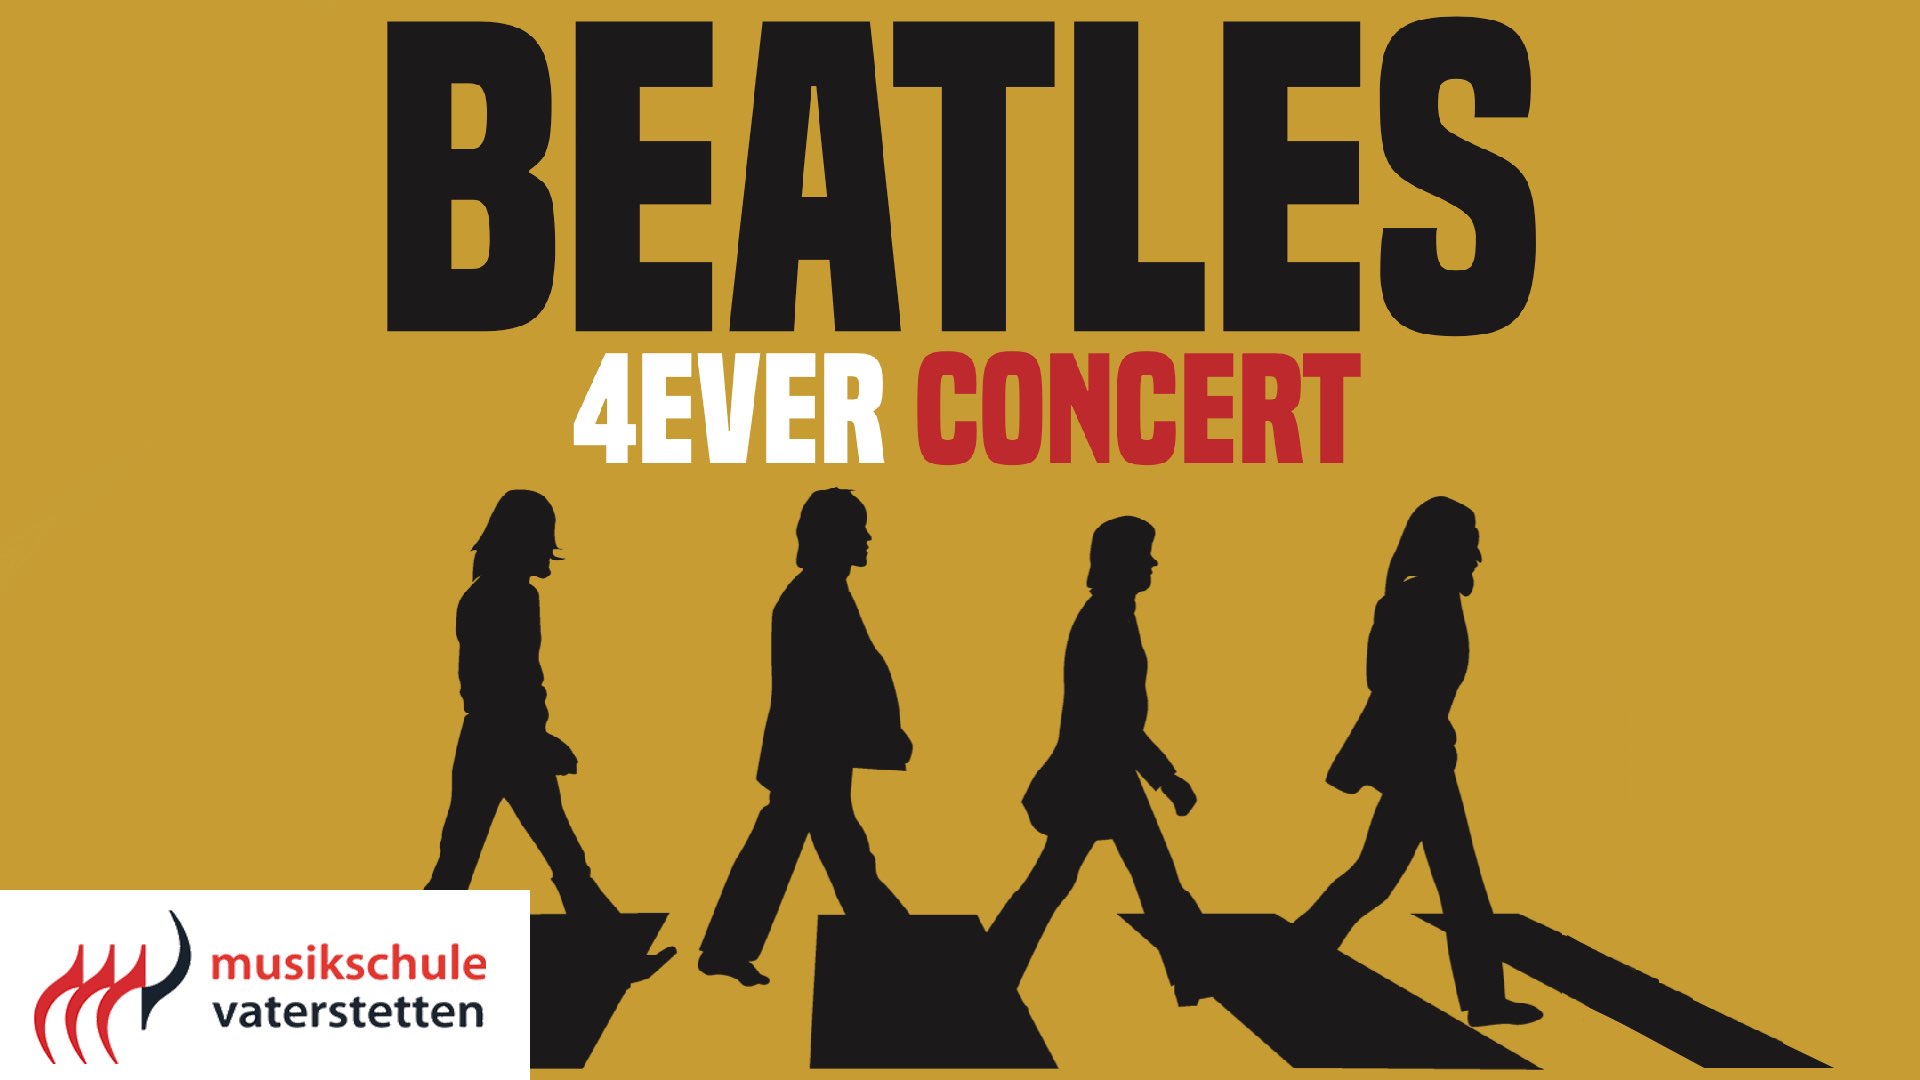 Beatles 4ever -großes Beatles-Tribute-Konzert